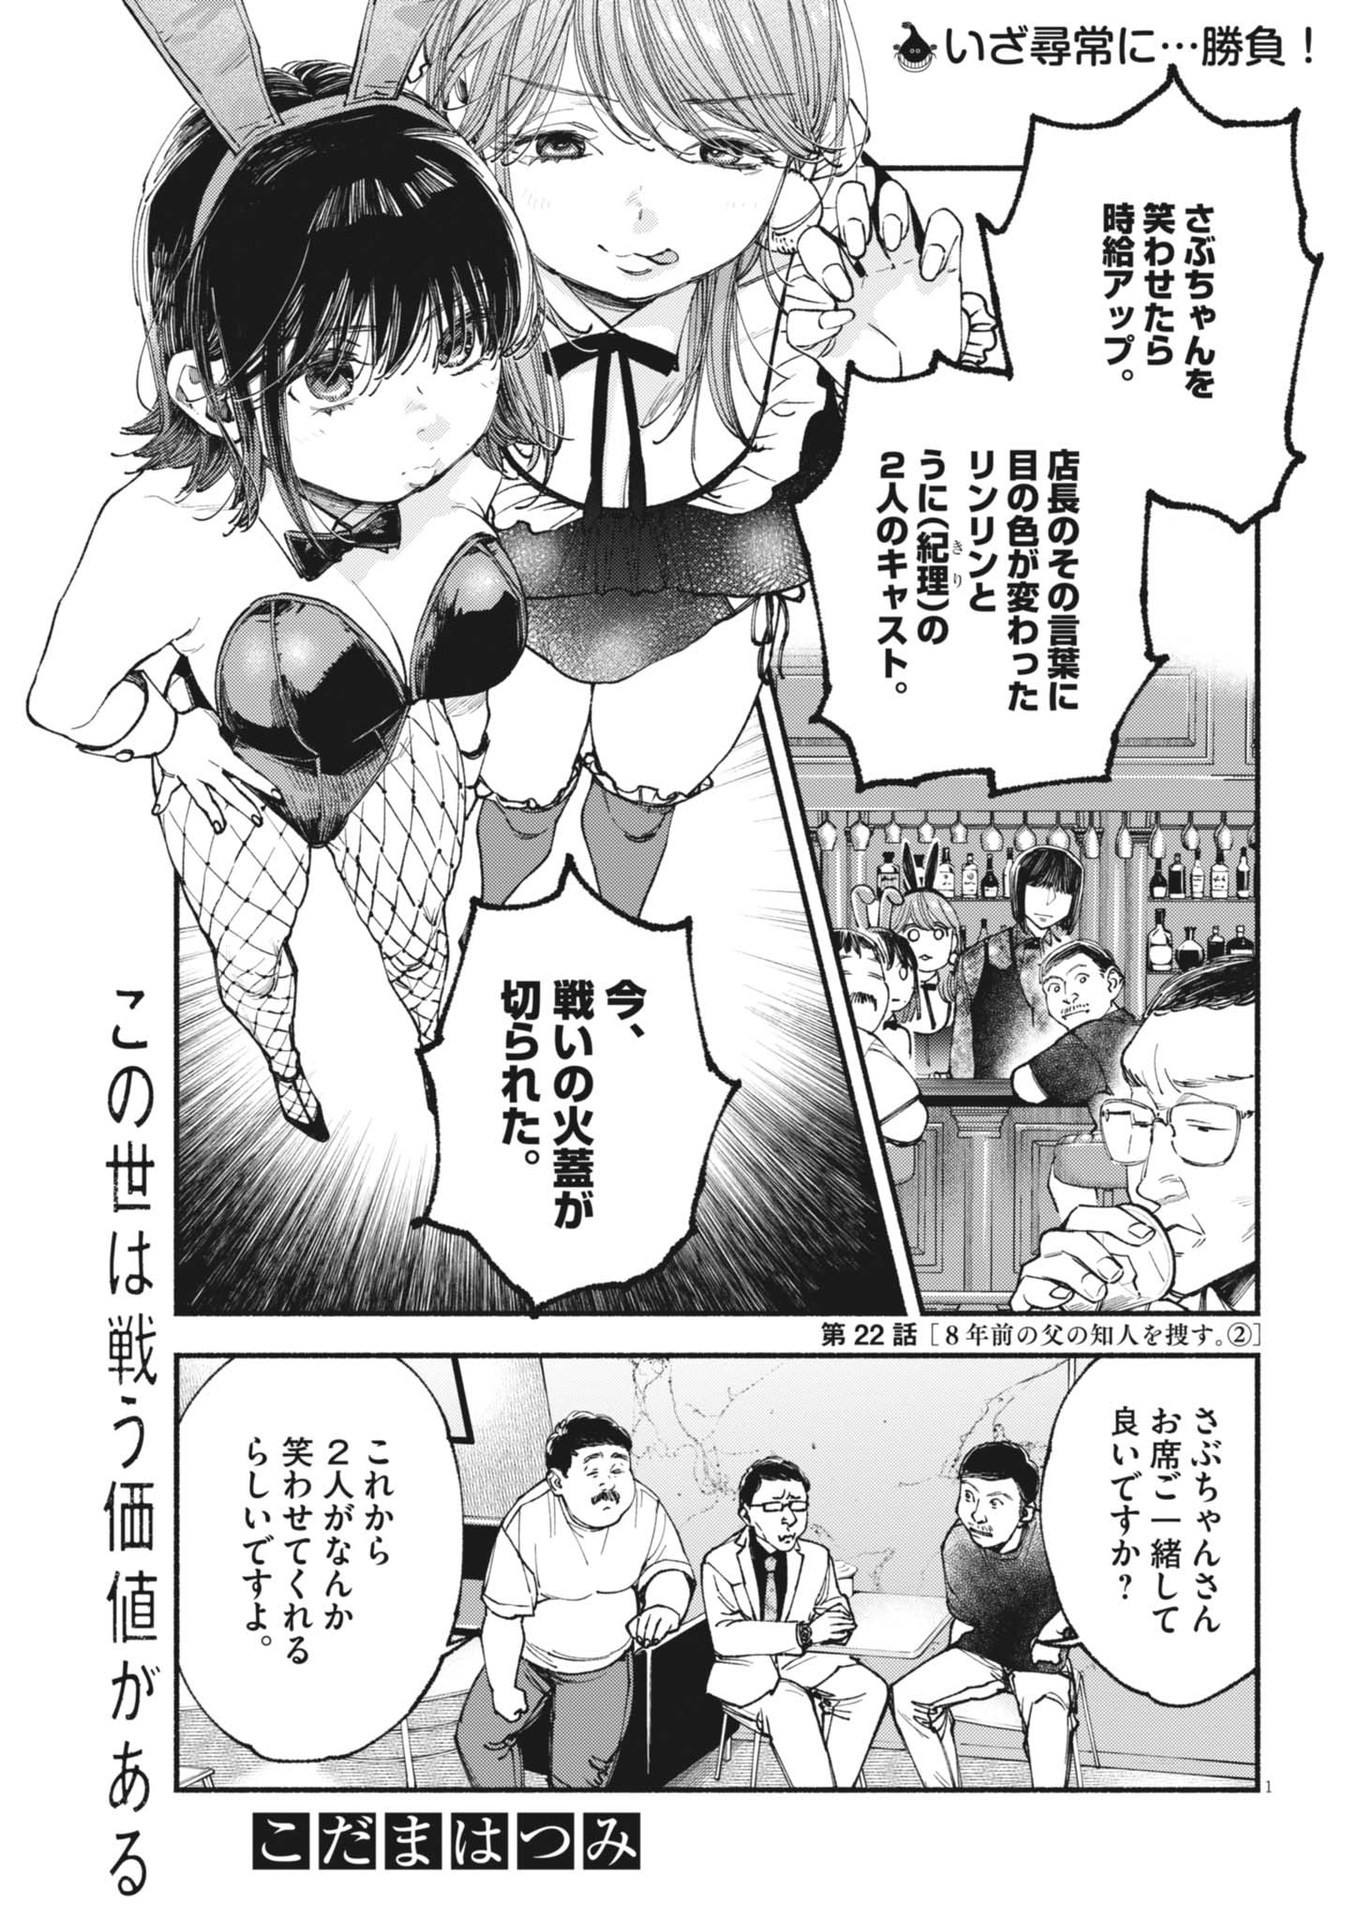 Konoyo wa Tatakau Kachi ga Aru  - Chapter 22 - Page 1